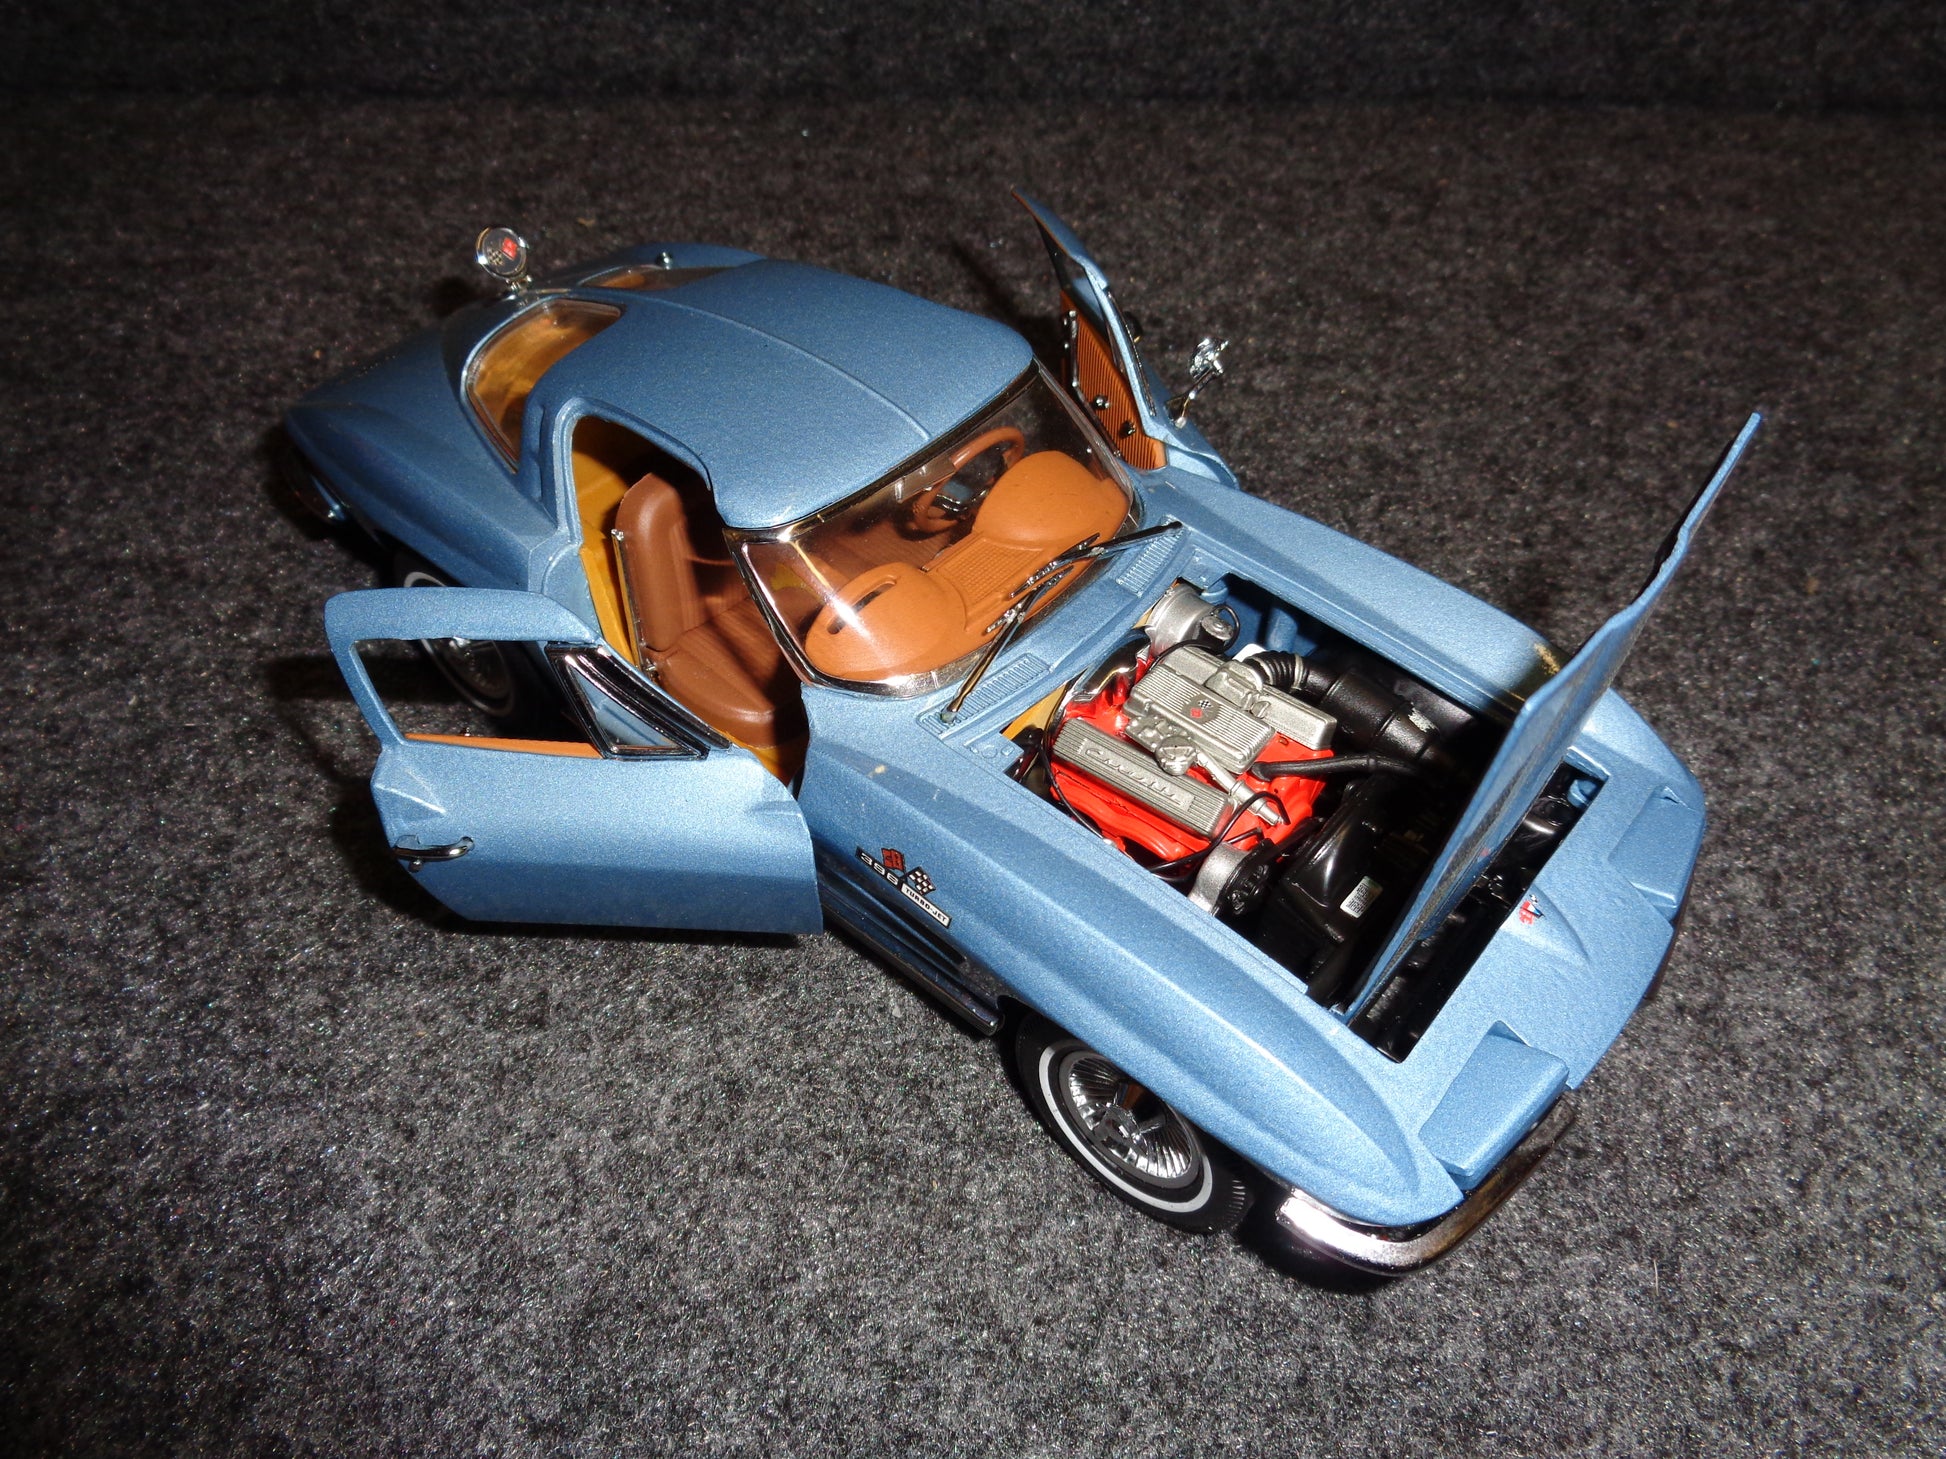 Napa Auto Parts 1963 Chevrolet Corvette Stingray